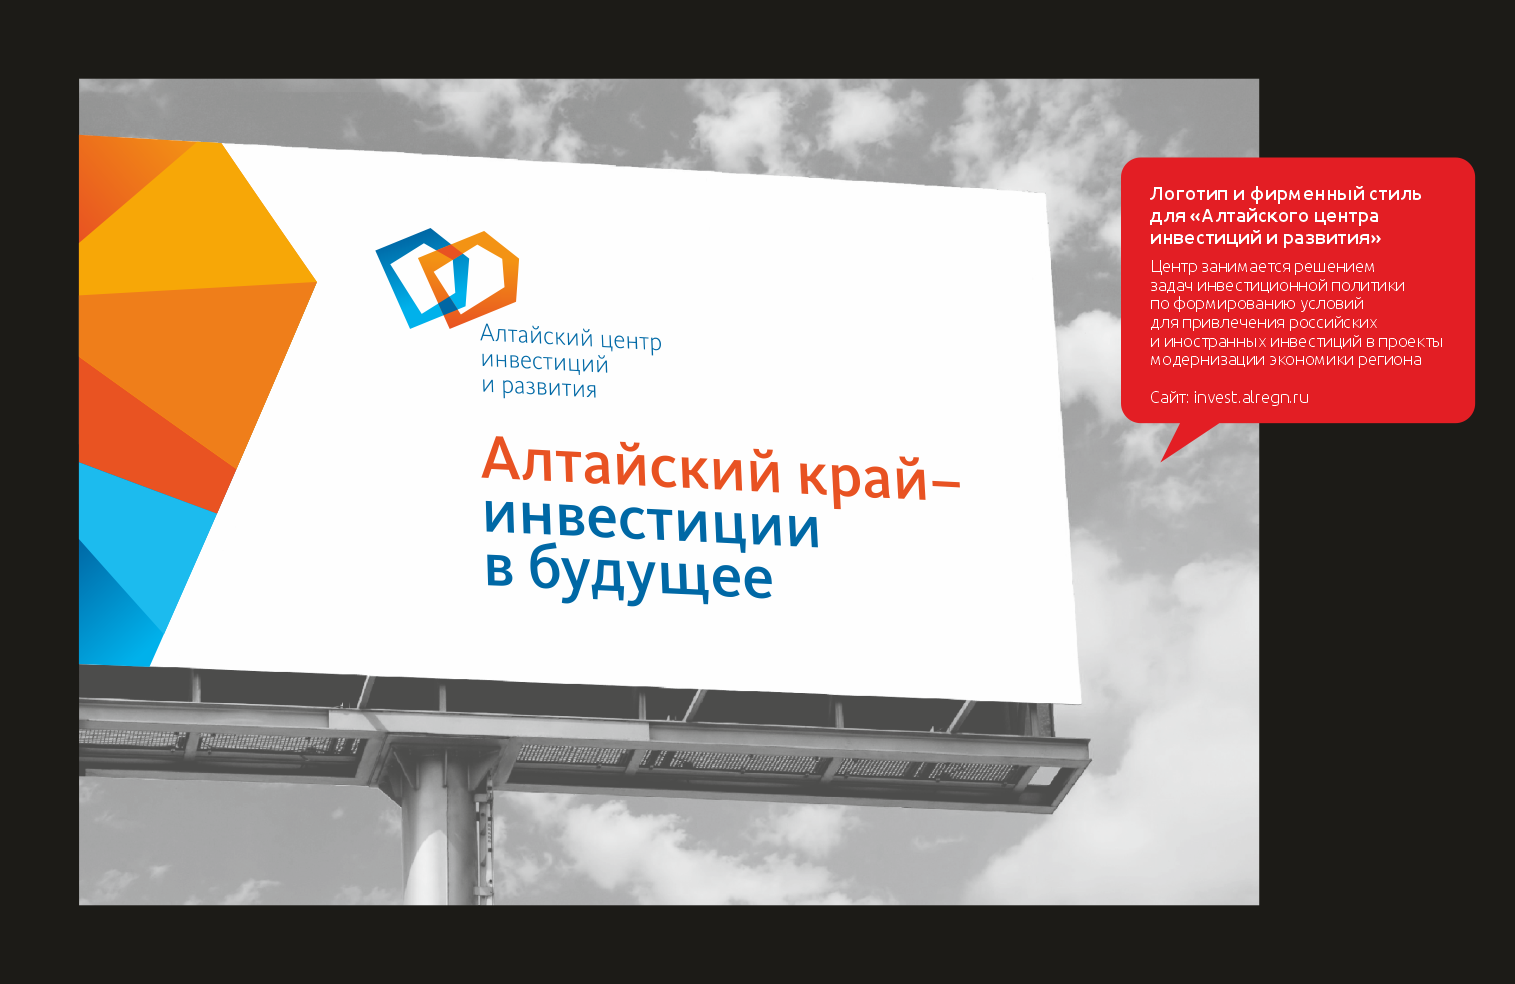 Логотип и фирменный стиль для «Алтайского центра инвестиций и развития»